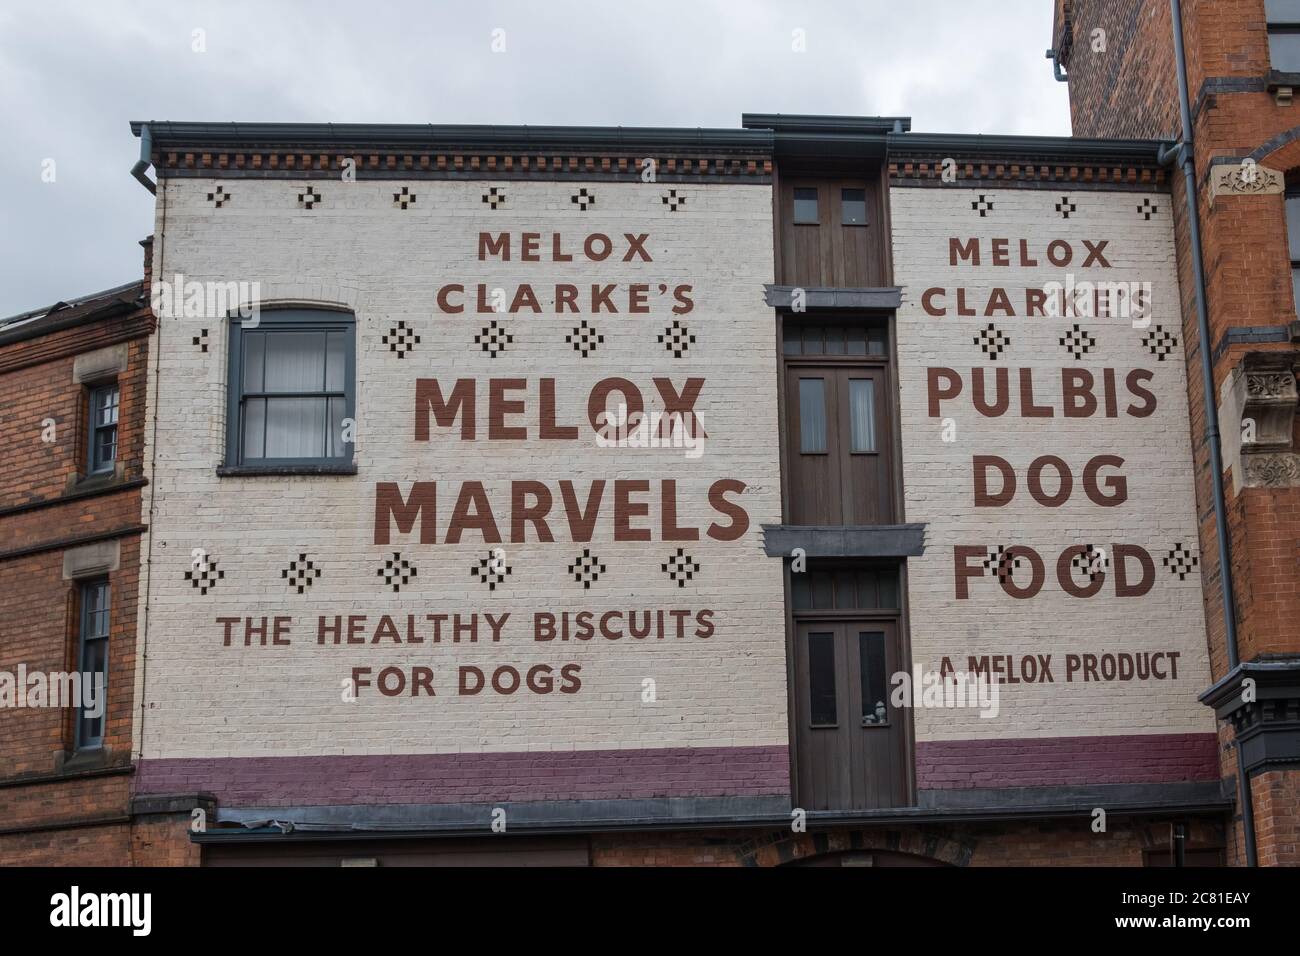 Cartelli pubblicitari vintage per Melox Clarke's Melox Marvels cane biscotti e Pulbis cibo cane dipinto sulla parete di un edificio a Digbeth, Birmingham Foto Stock